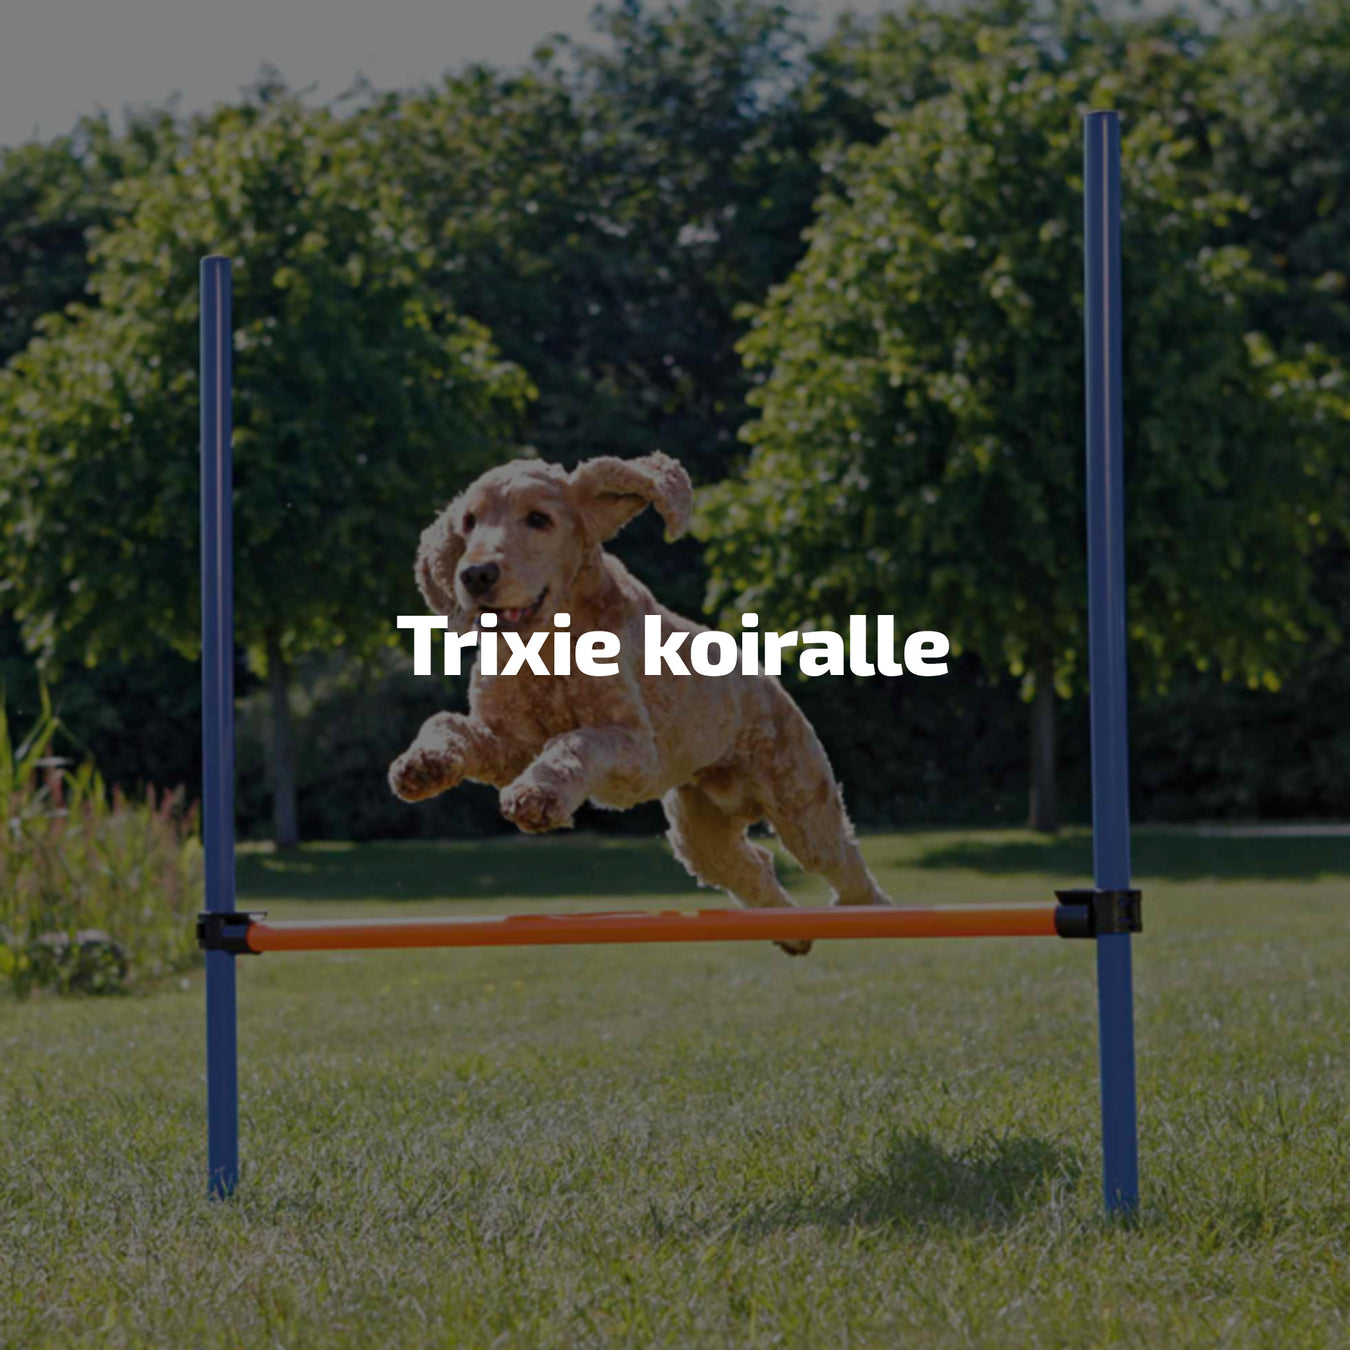 Trixie koiralle